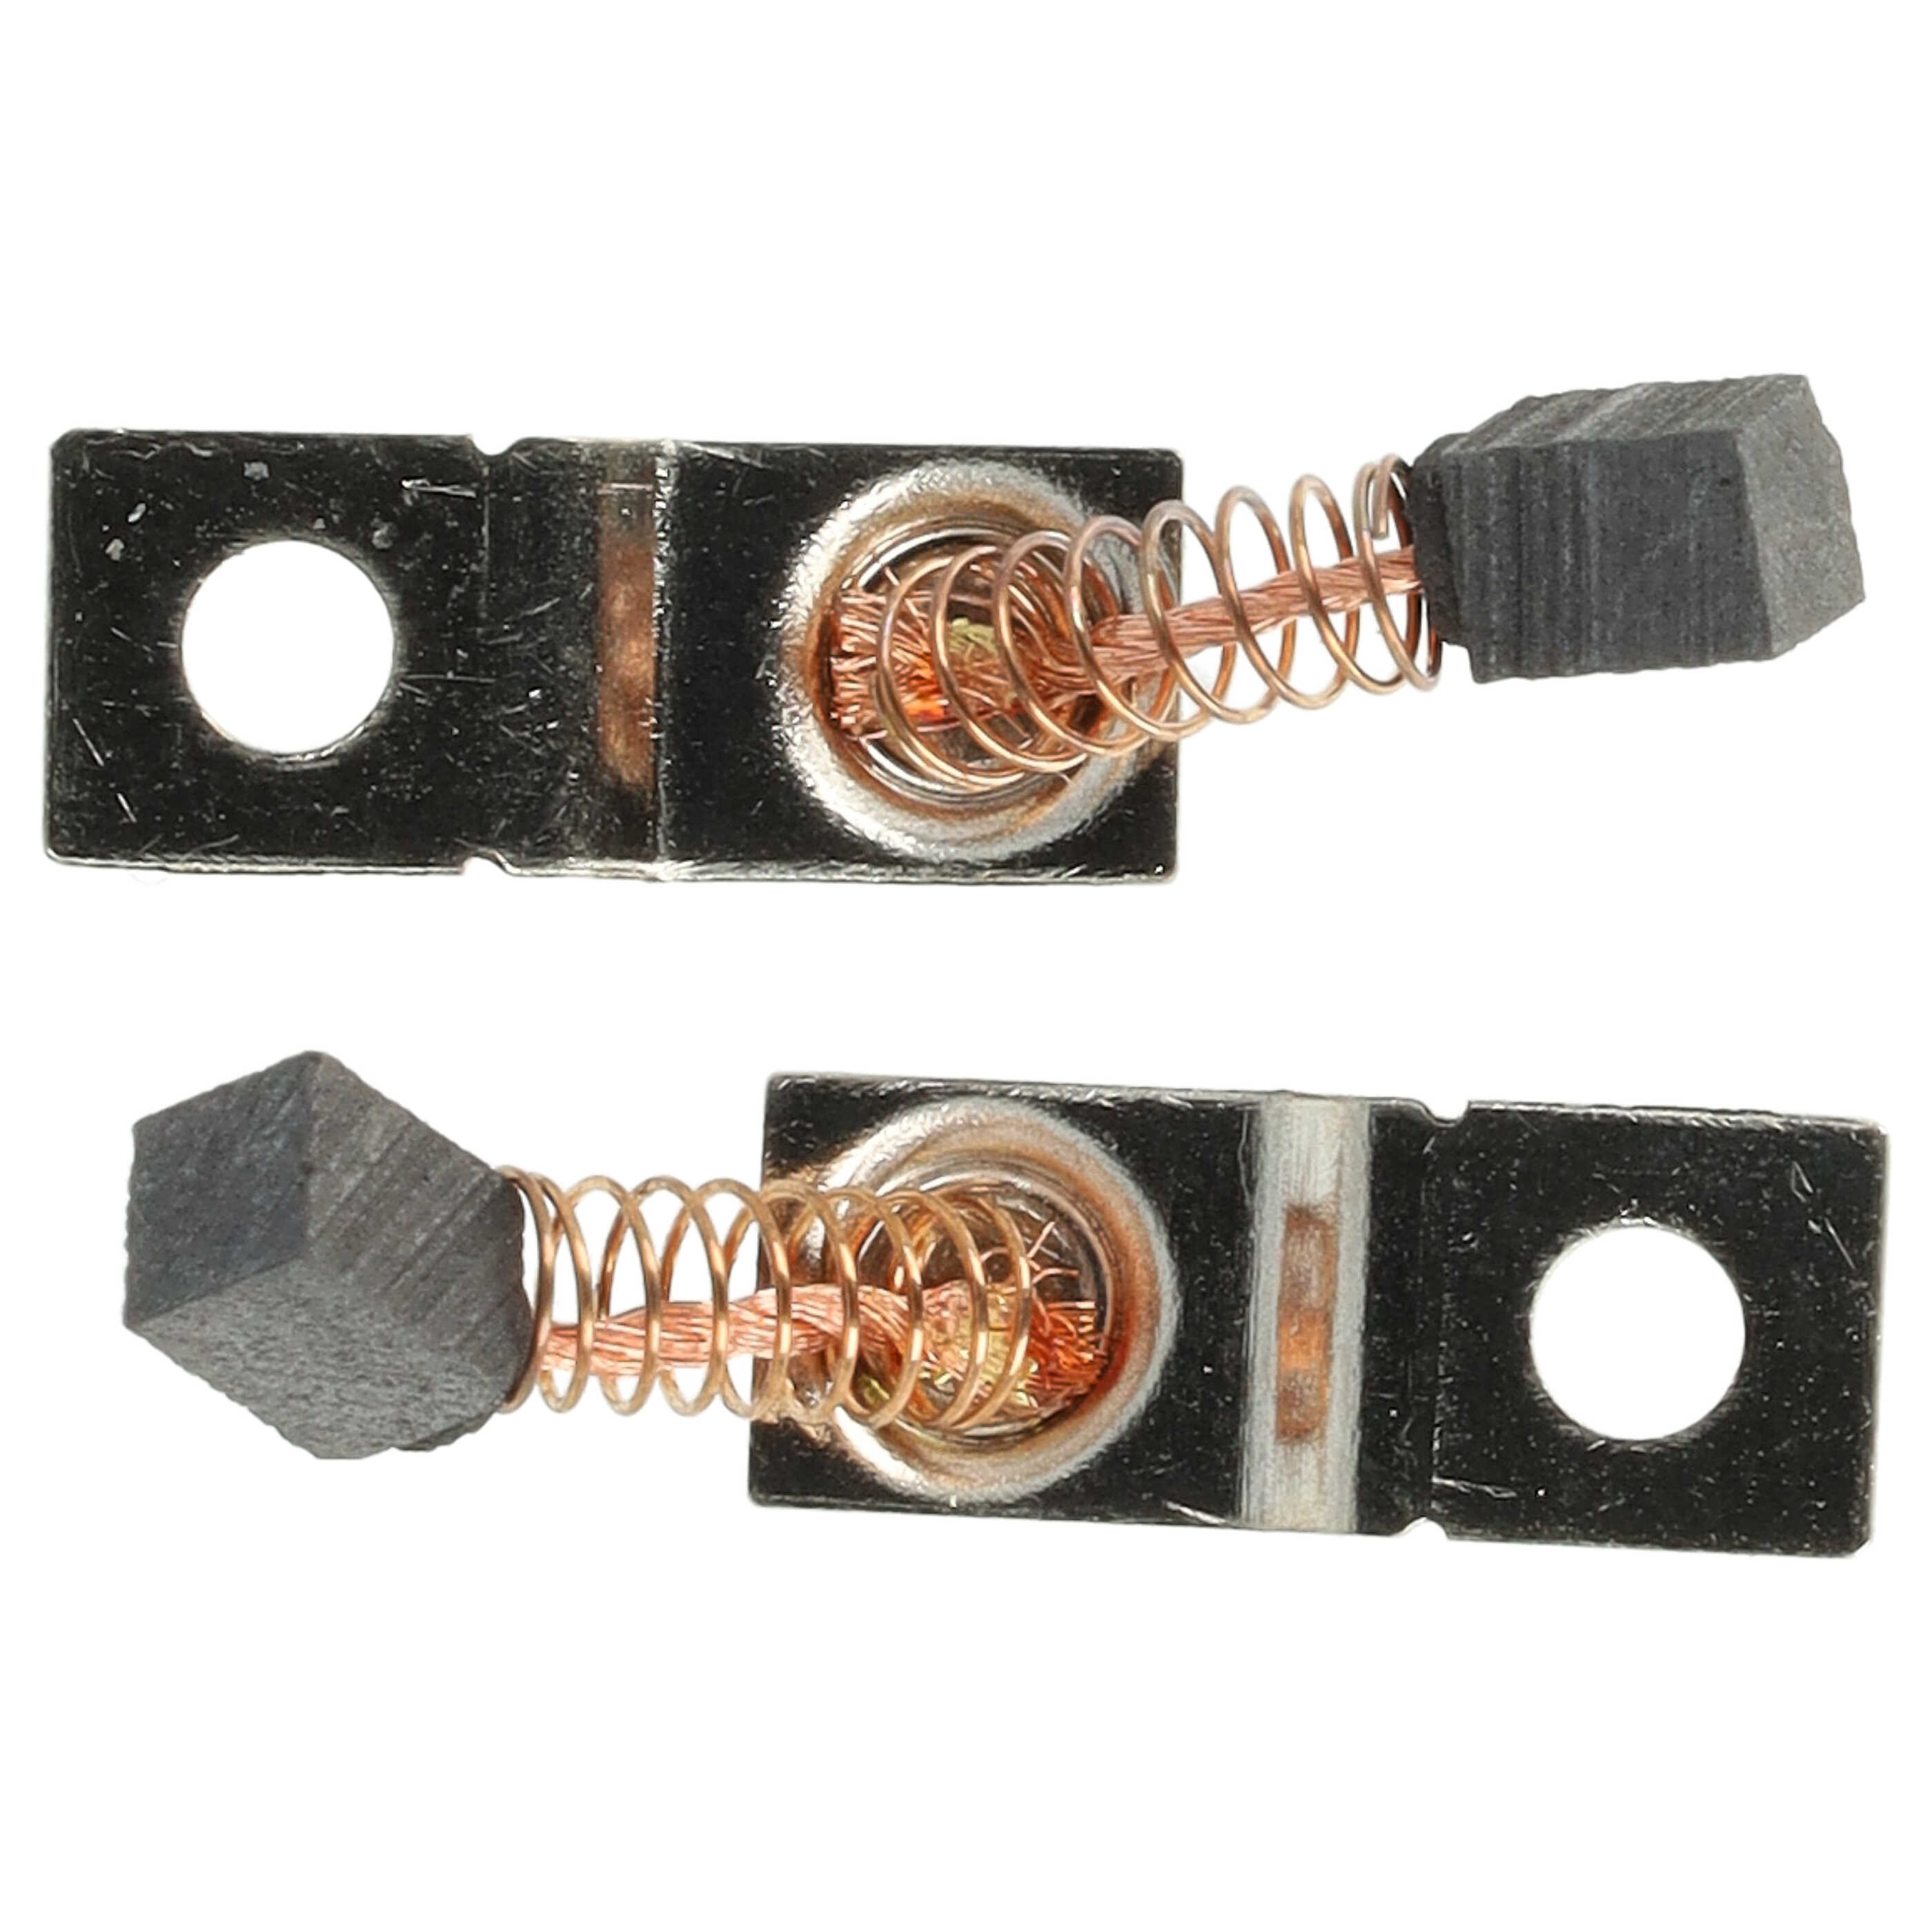 2x Kohlebürsten passend für SaeshinStrong Elektrogerät + Feder, 5,5 x 3 x 3 mm